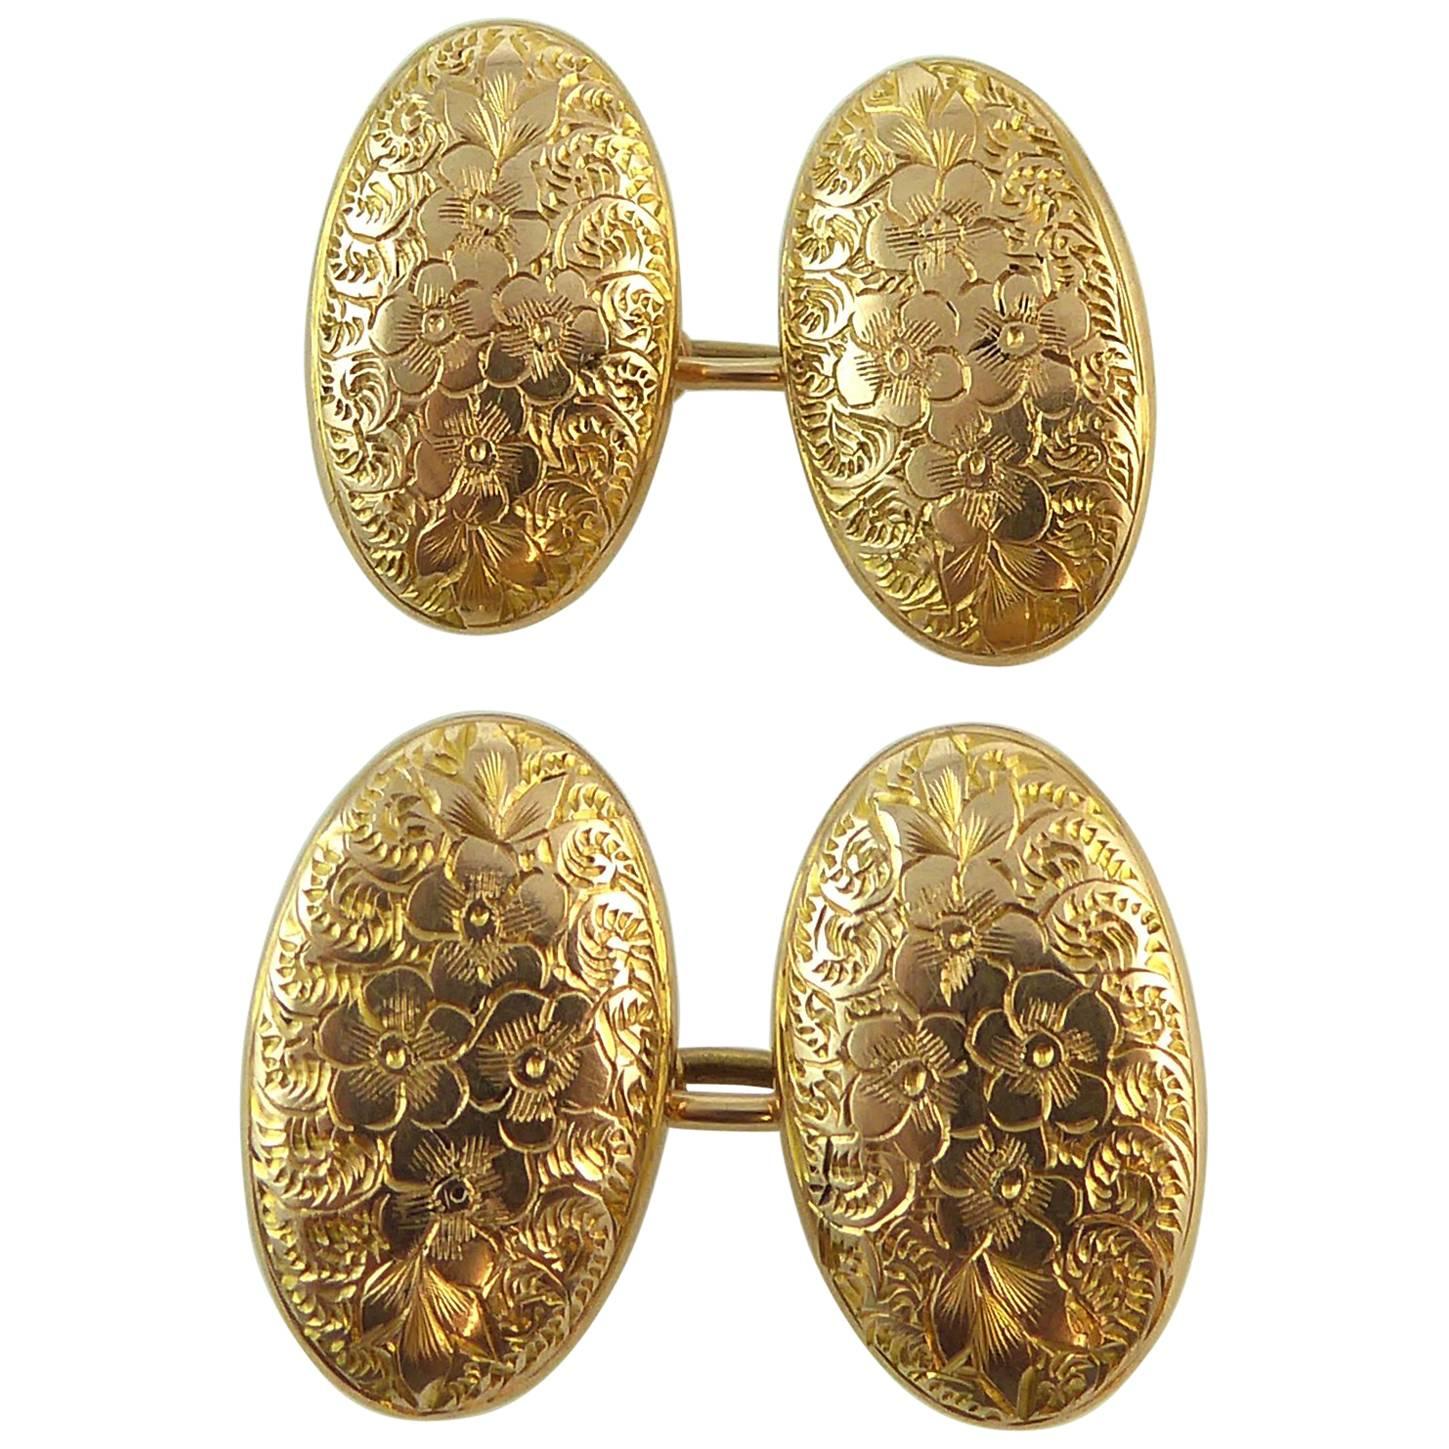 Antique 15 Carat Gold Cufflinks, Hallmarked London, 1912